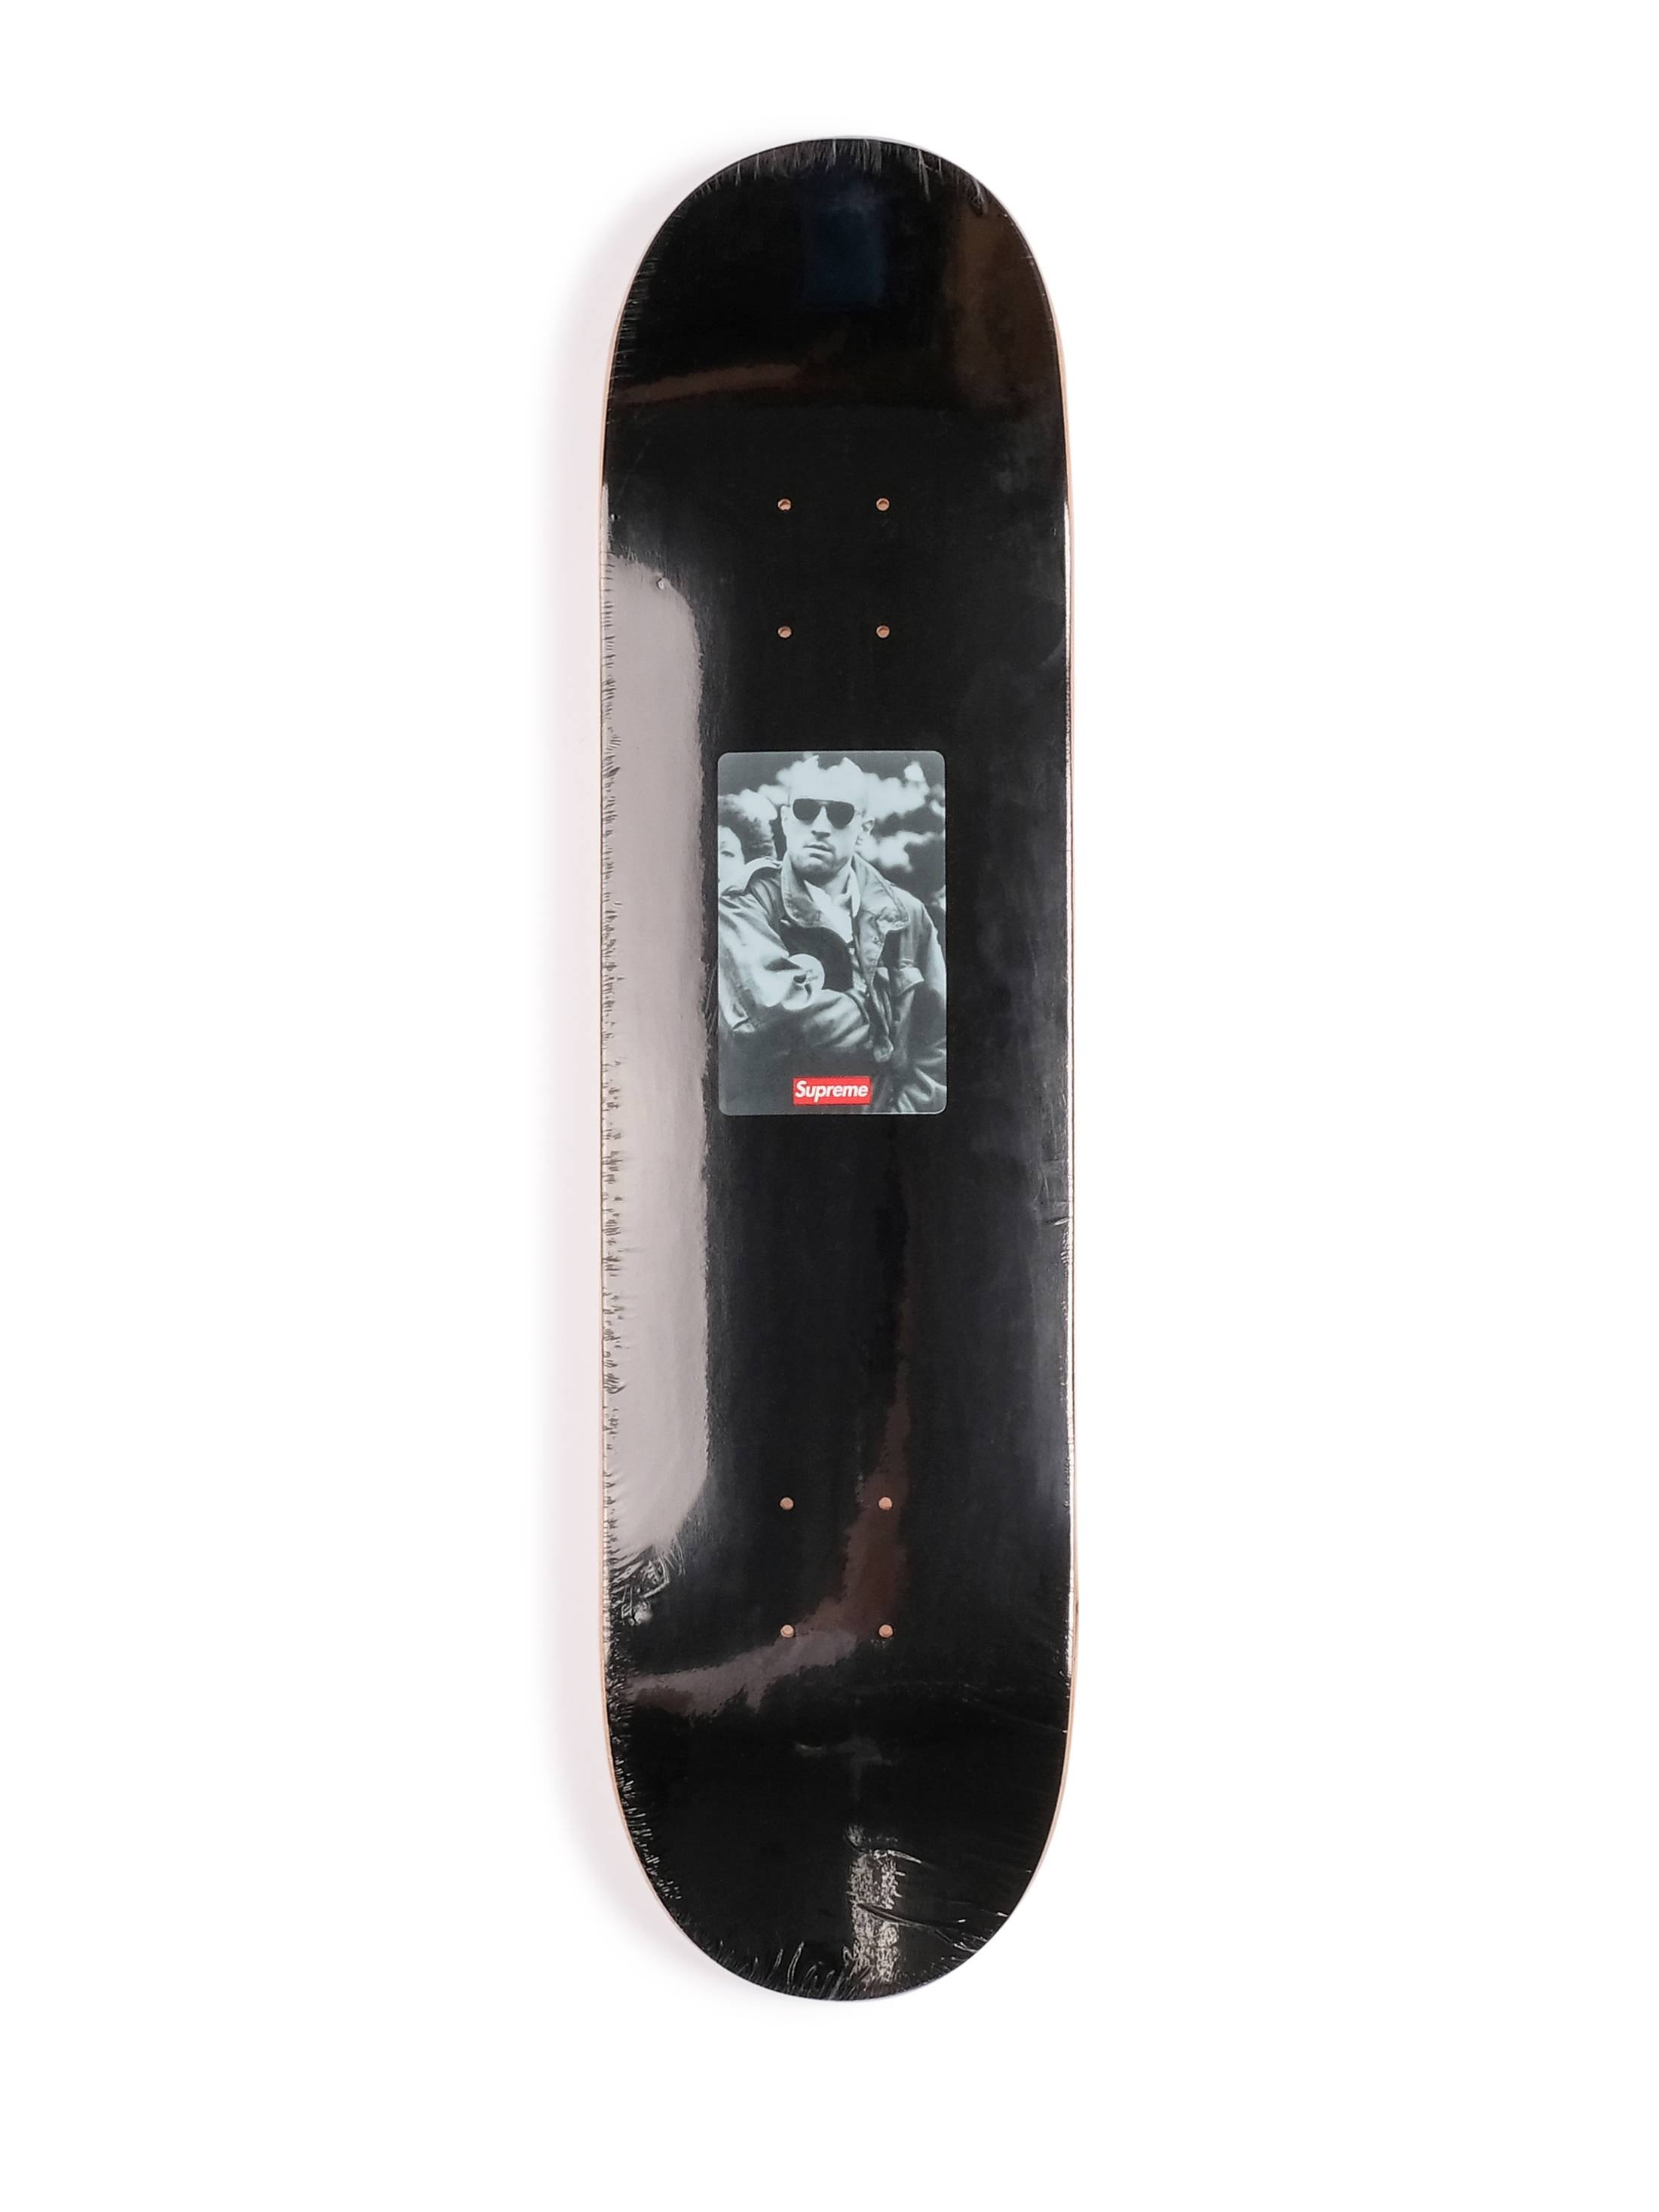 Grailed 全新「Heatwave」特別企劃將發售 100 塊 Supreme 稀有滑板 